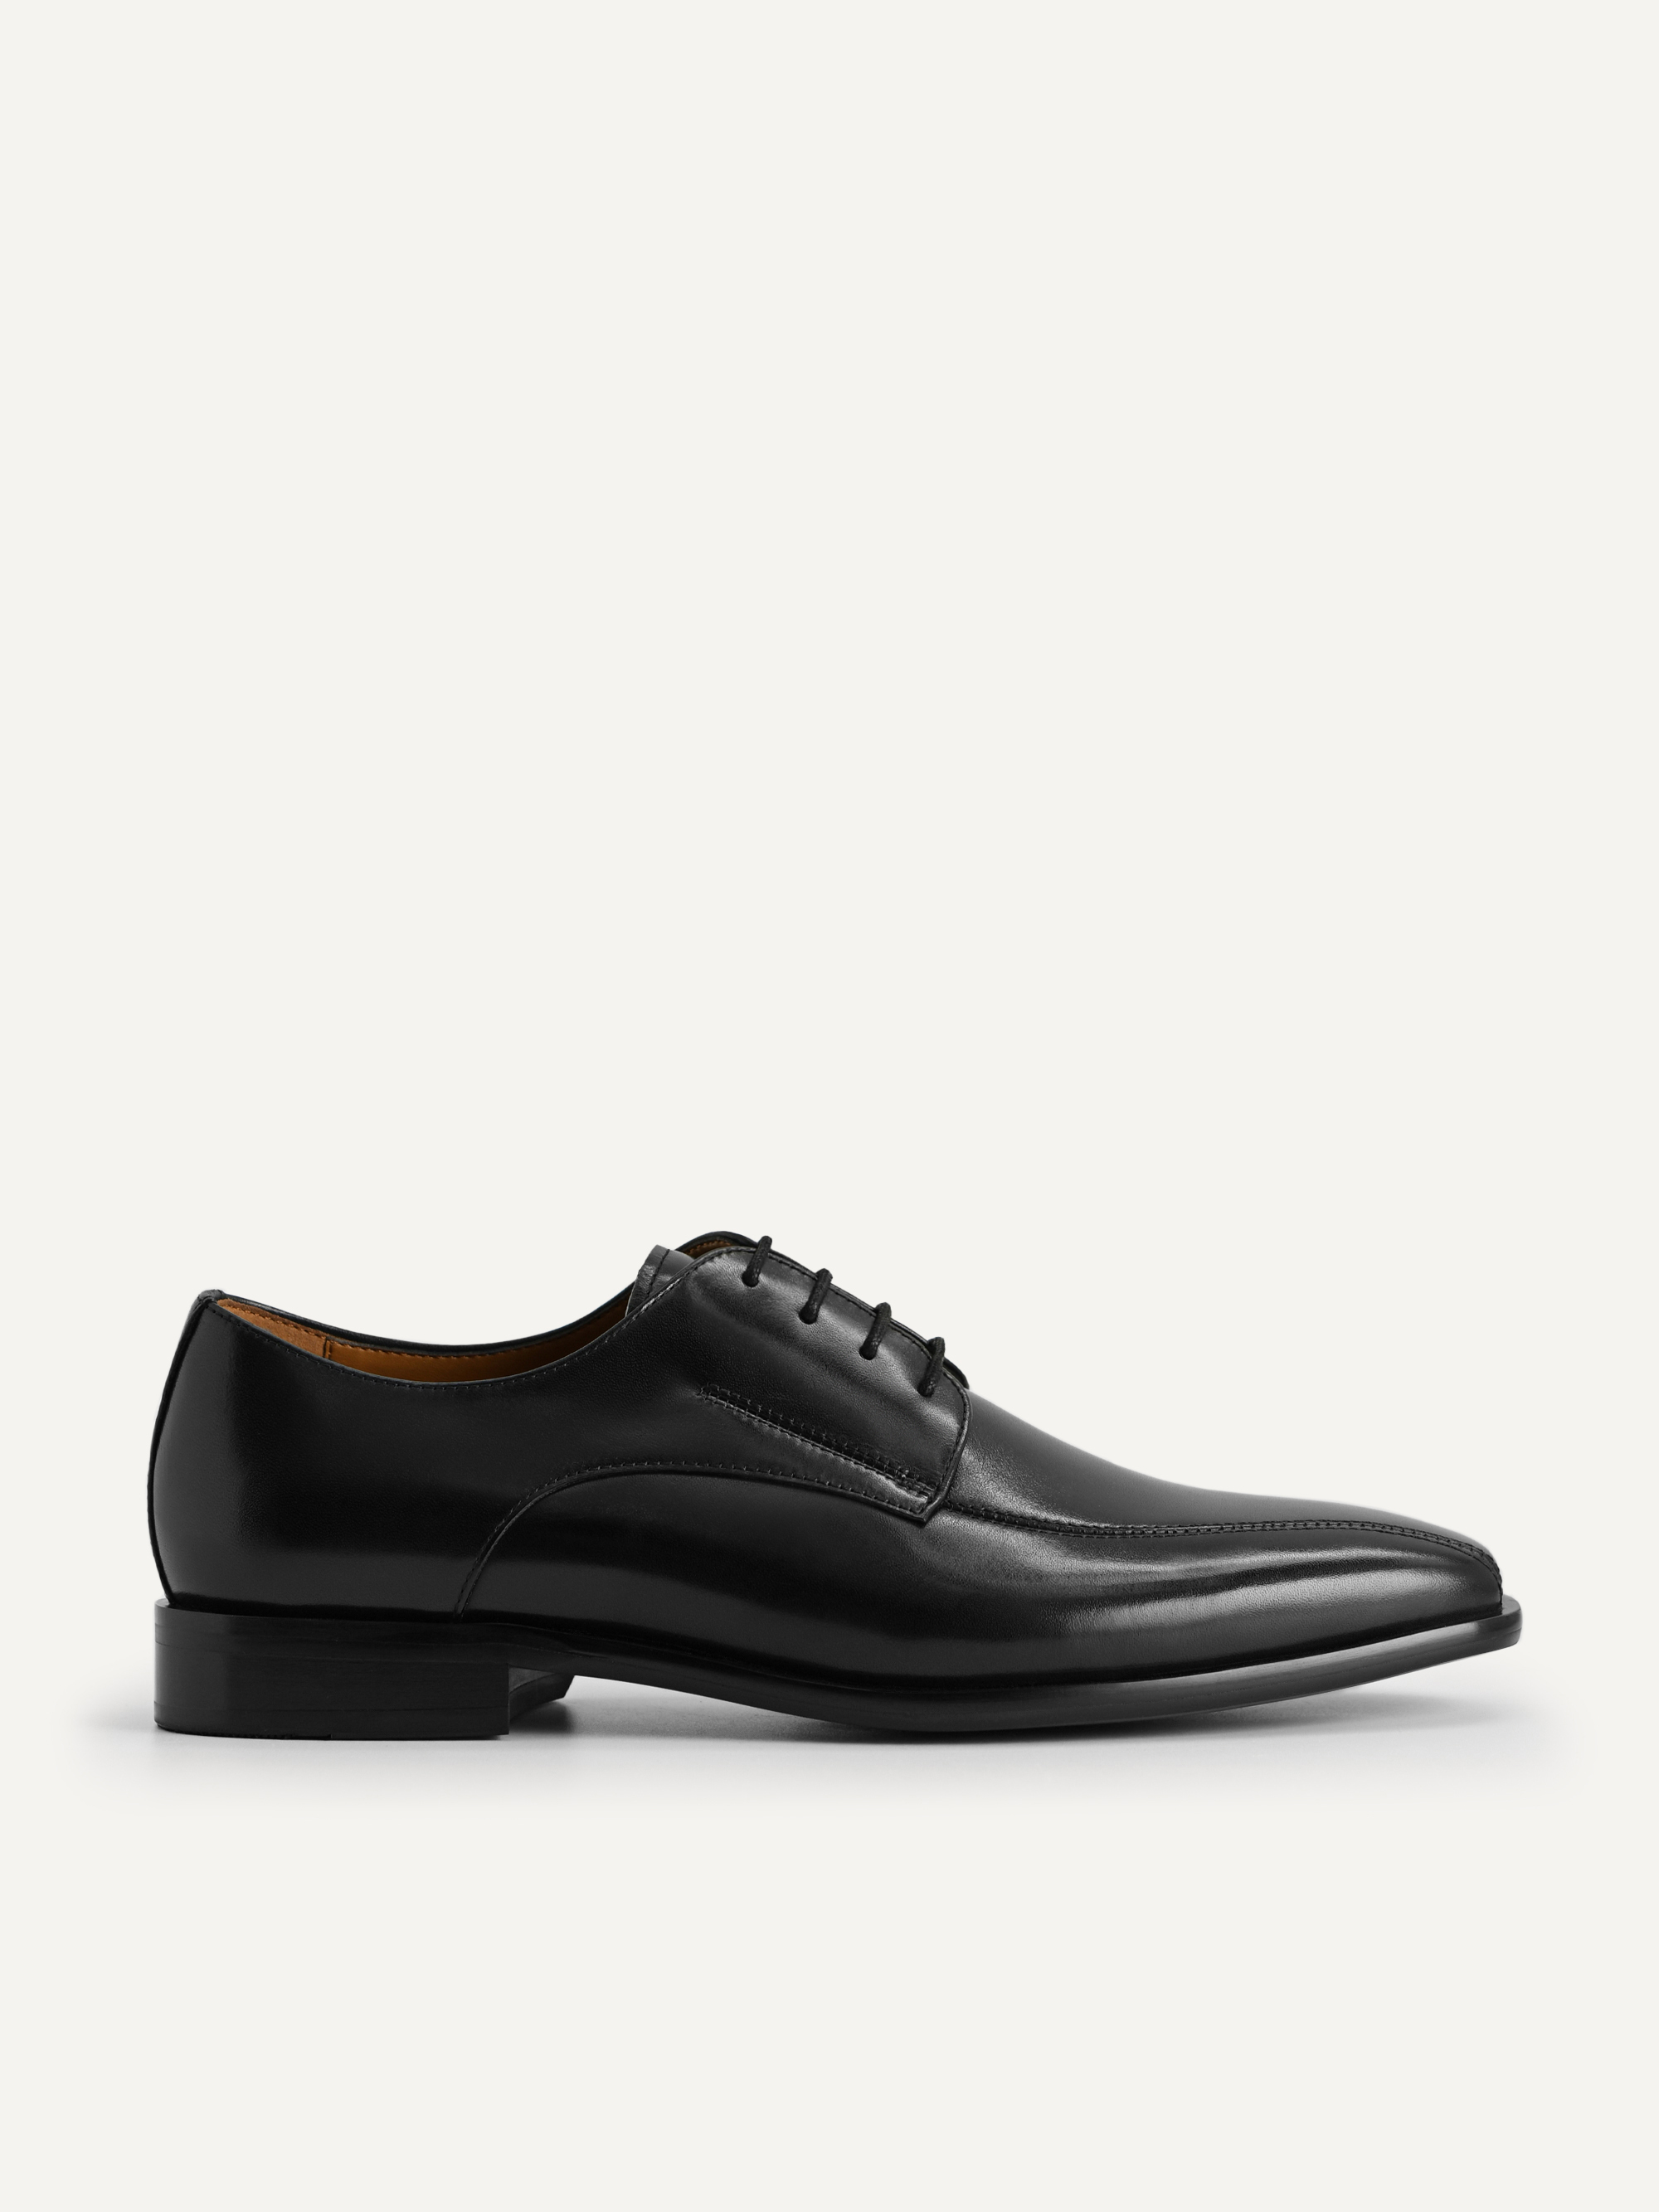 Black Patent Leather Derby Shoes - PEDRO AU